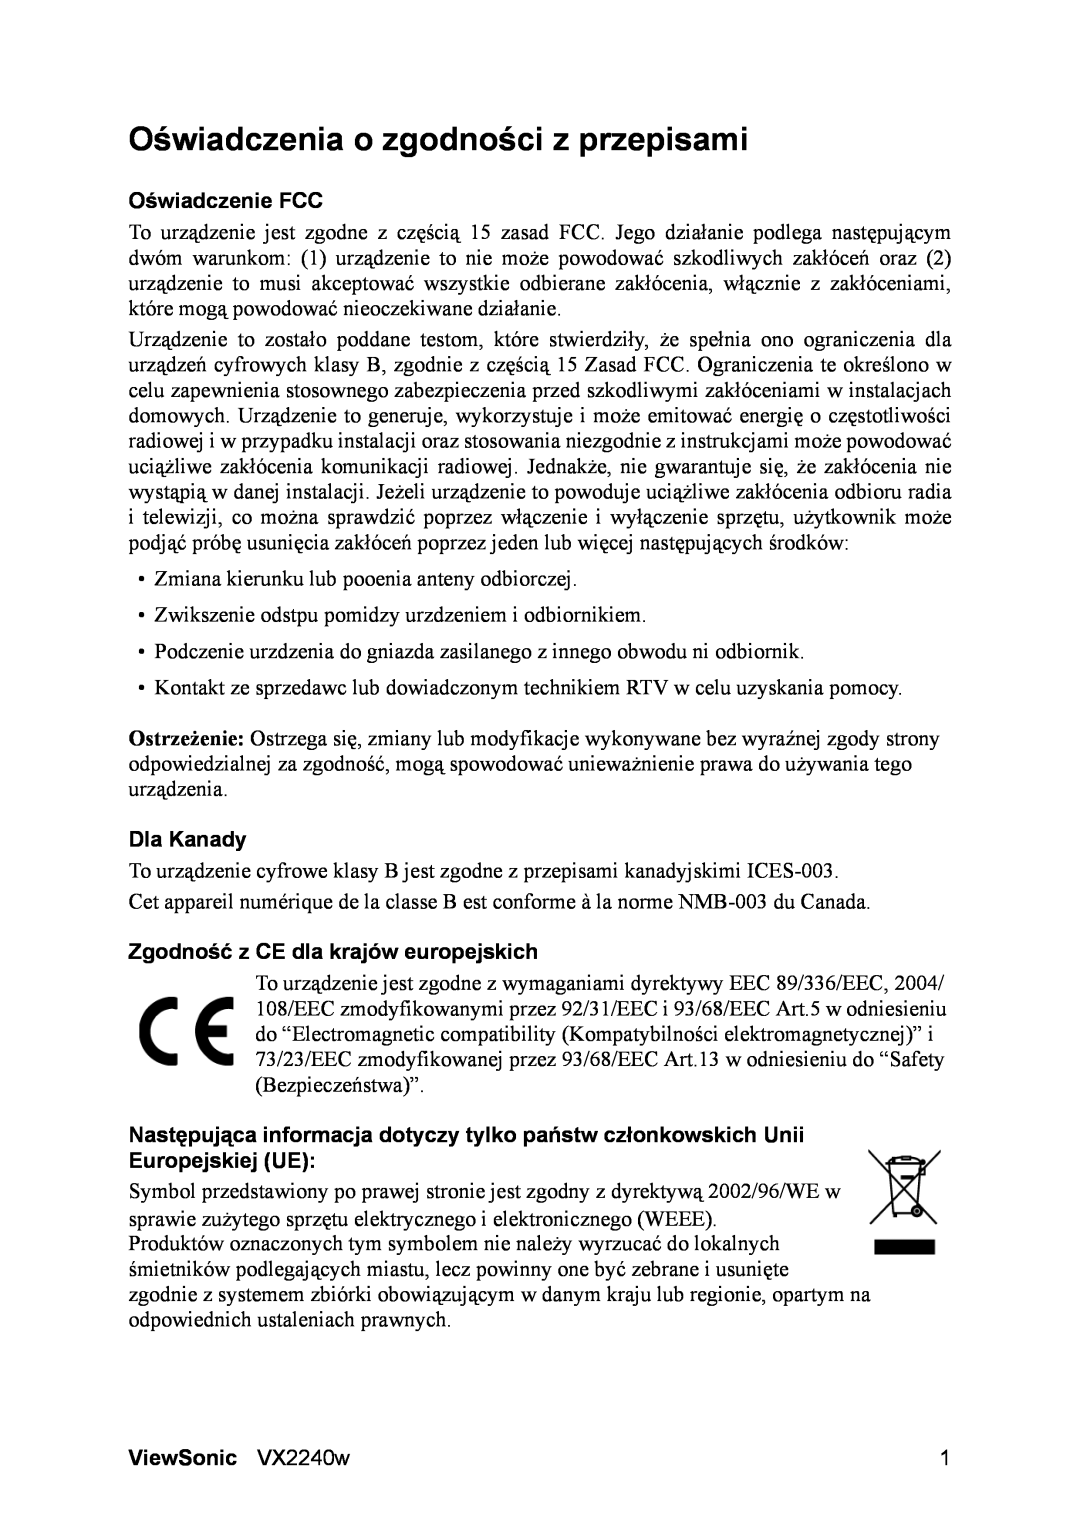 ViewSonic VS11985 manual Oświadczenia o zgodności z przepisami, Oświadczenie FCC, Dla Kanady, ViewSonic VX2240w 